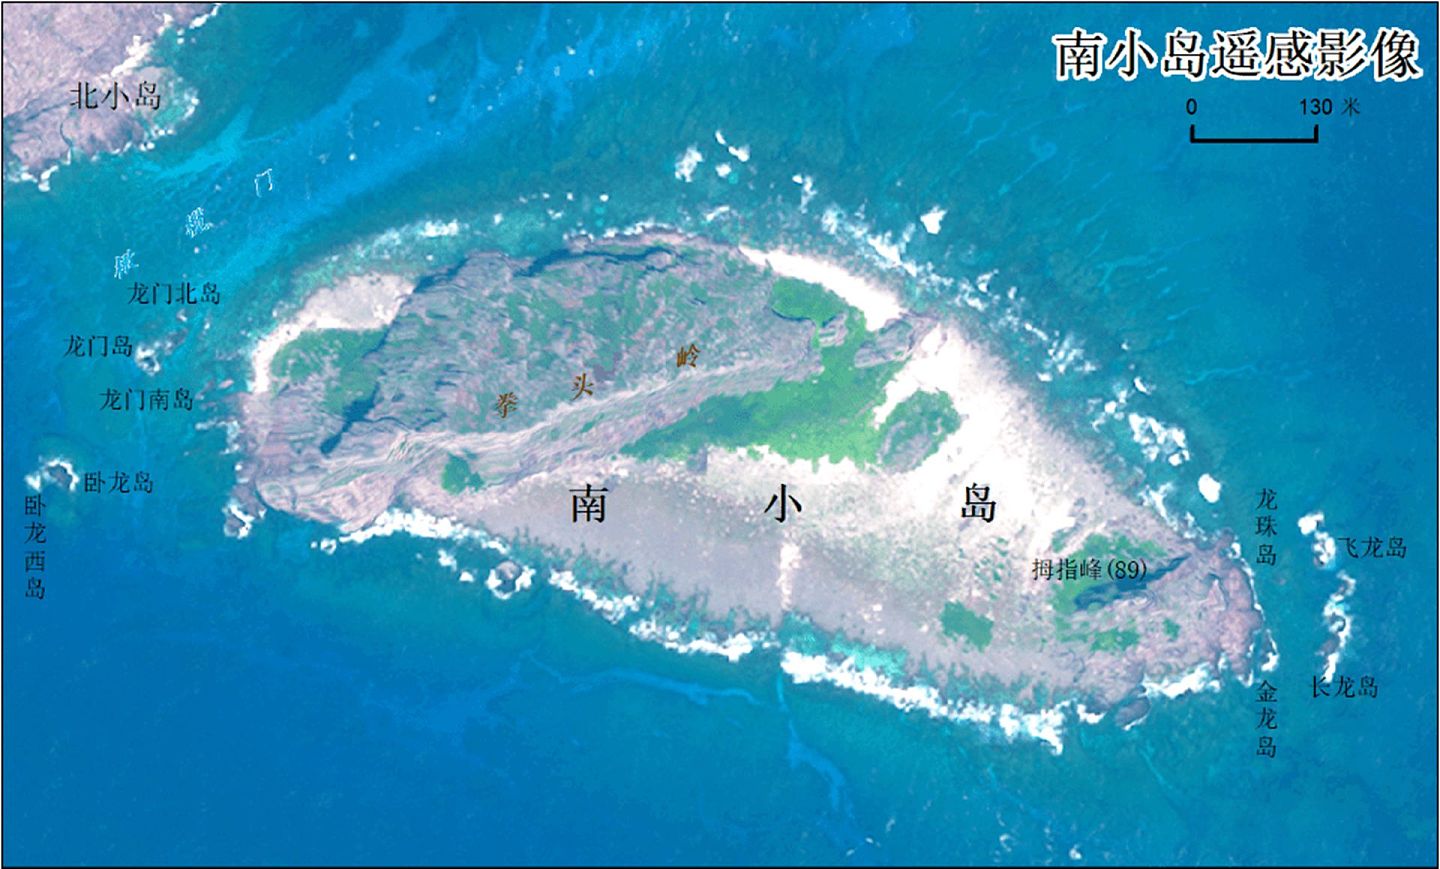 在钓鱼岛争端持续的情况下，中国官方此前公布了钓鱼岛相关地形数据。（中国自然资源部官网）